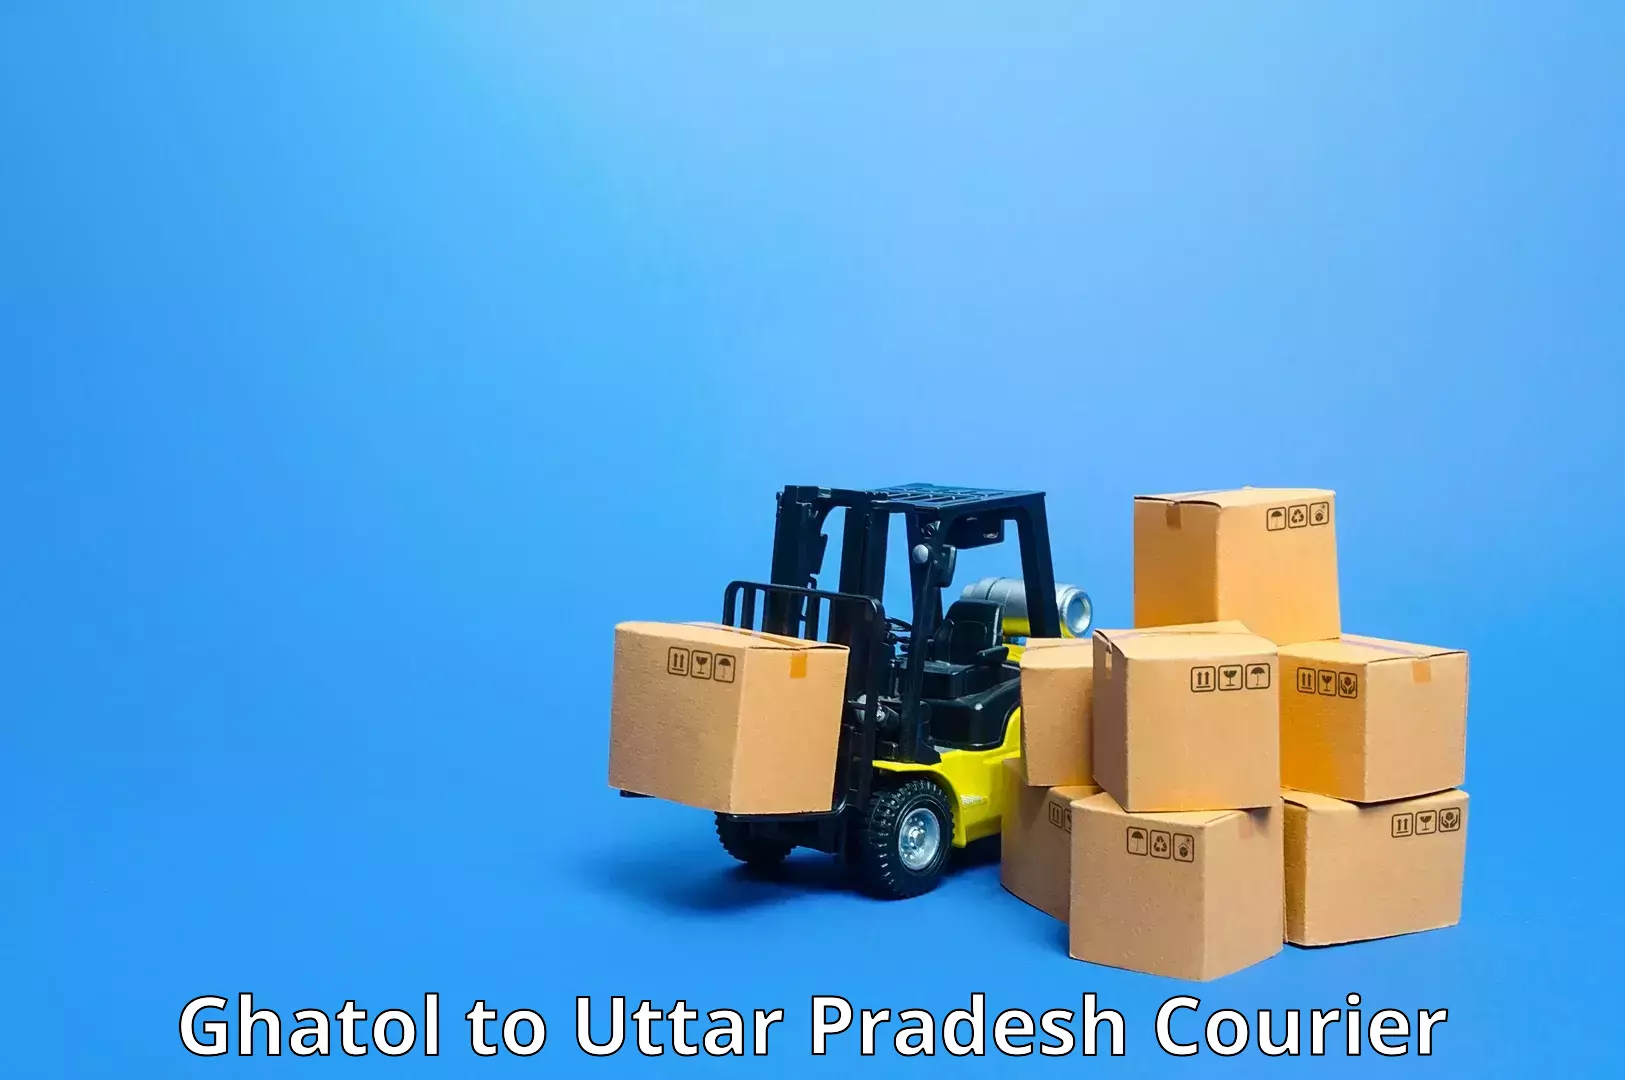 Package forwarding in Ghatol to Kulpahar